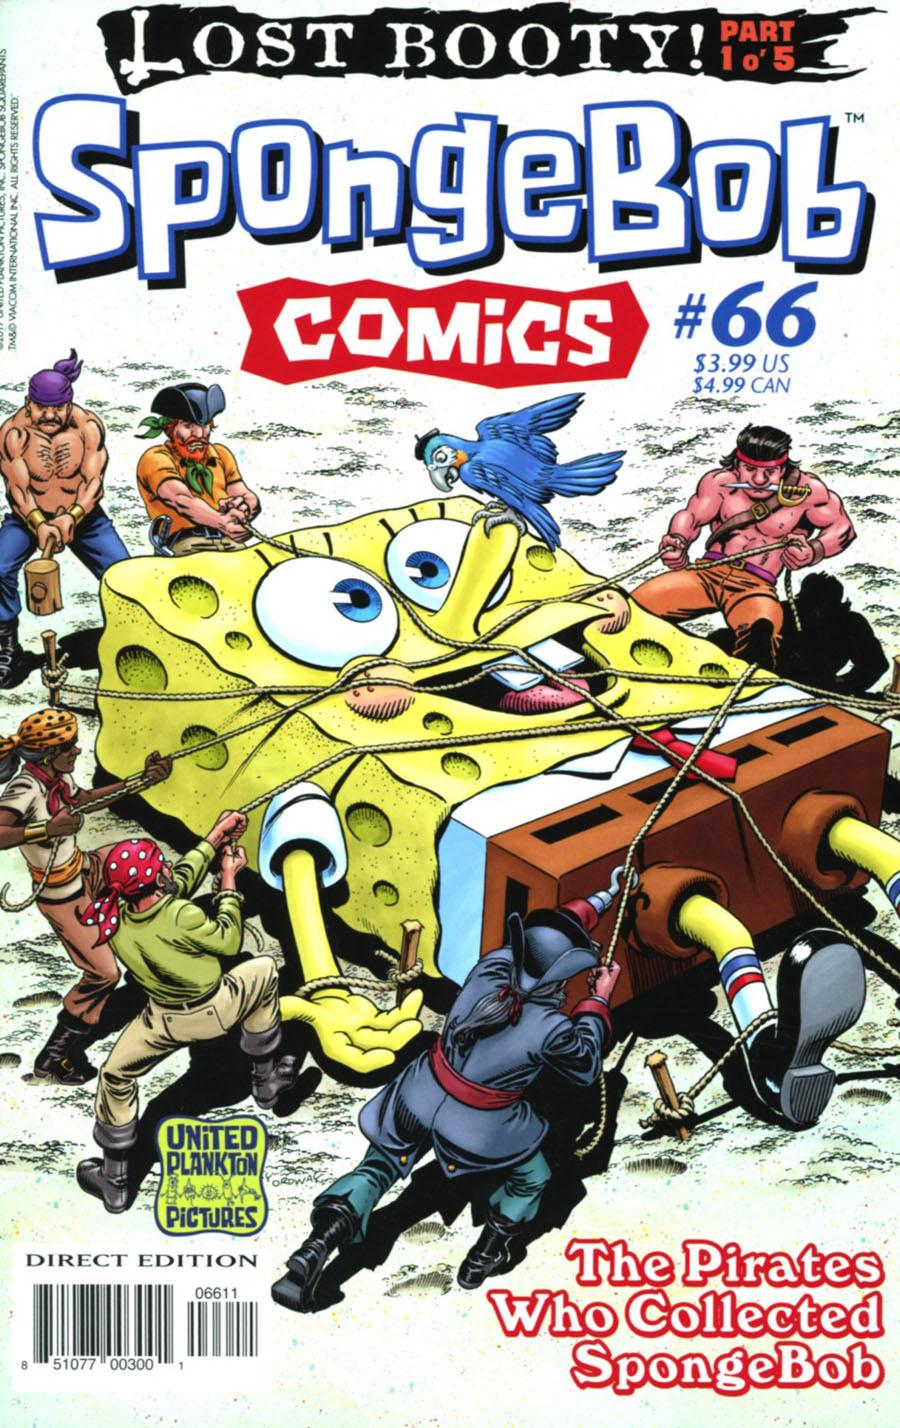 SpongeBob Comics Vol. 1 #66